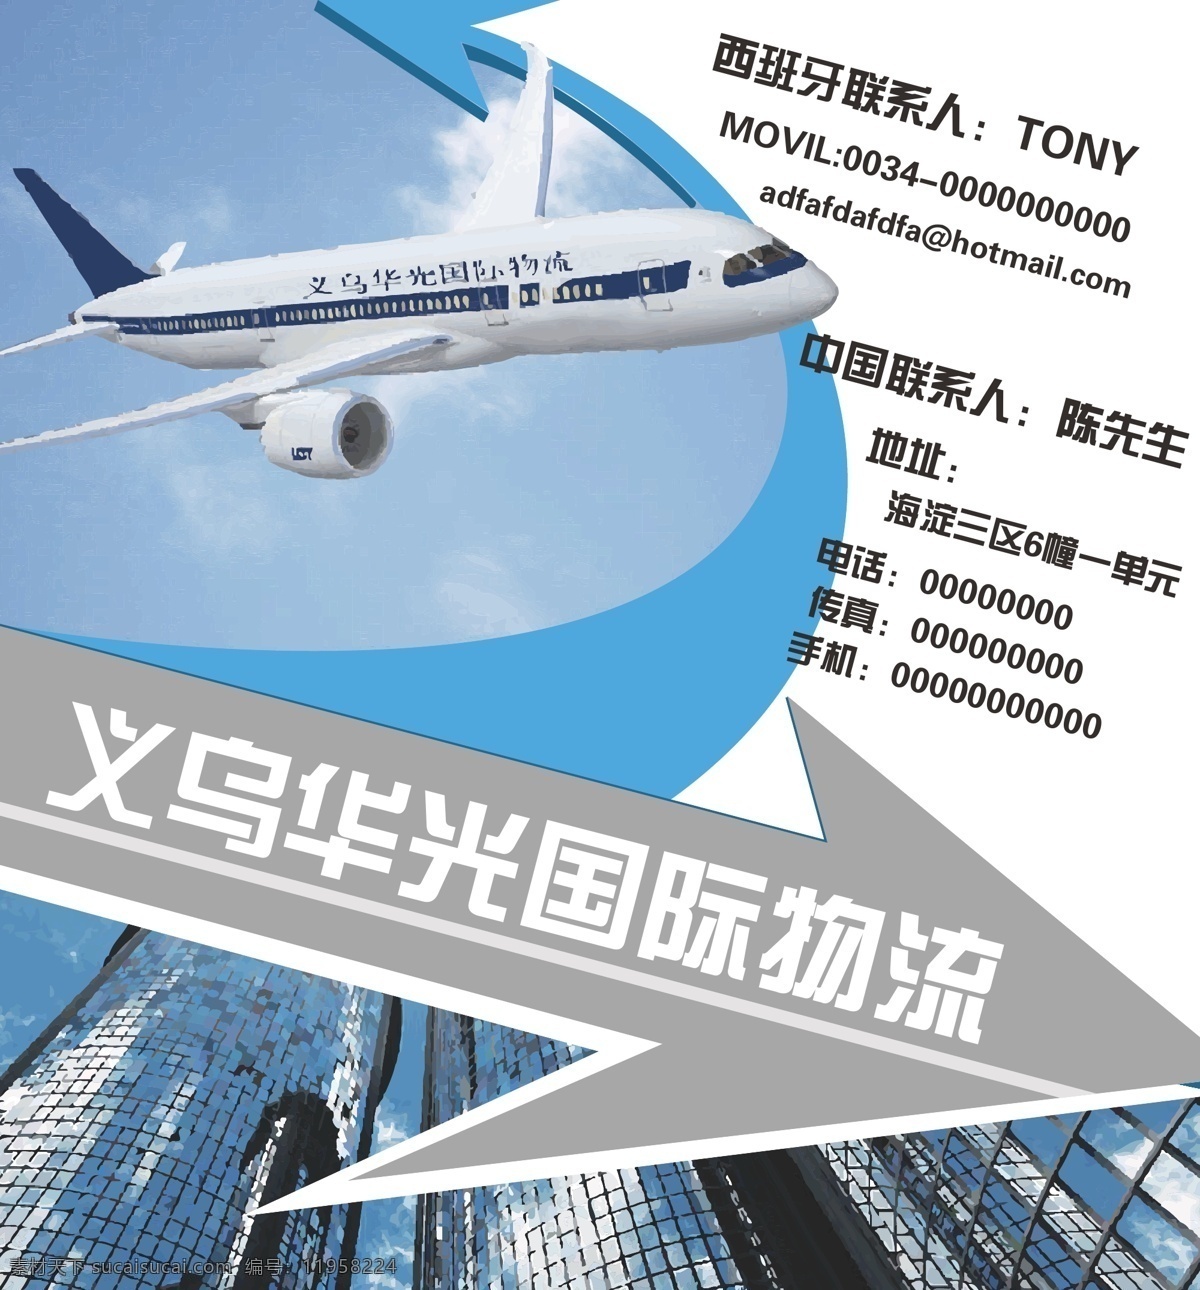 都市 飞机 公司 广告 国际 模板 物流 原图 国际物流 矢量 模板下载 海报 国际物流广告 其他海报设计